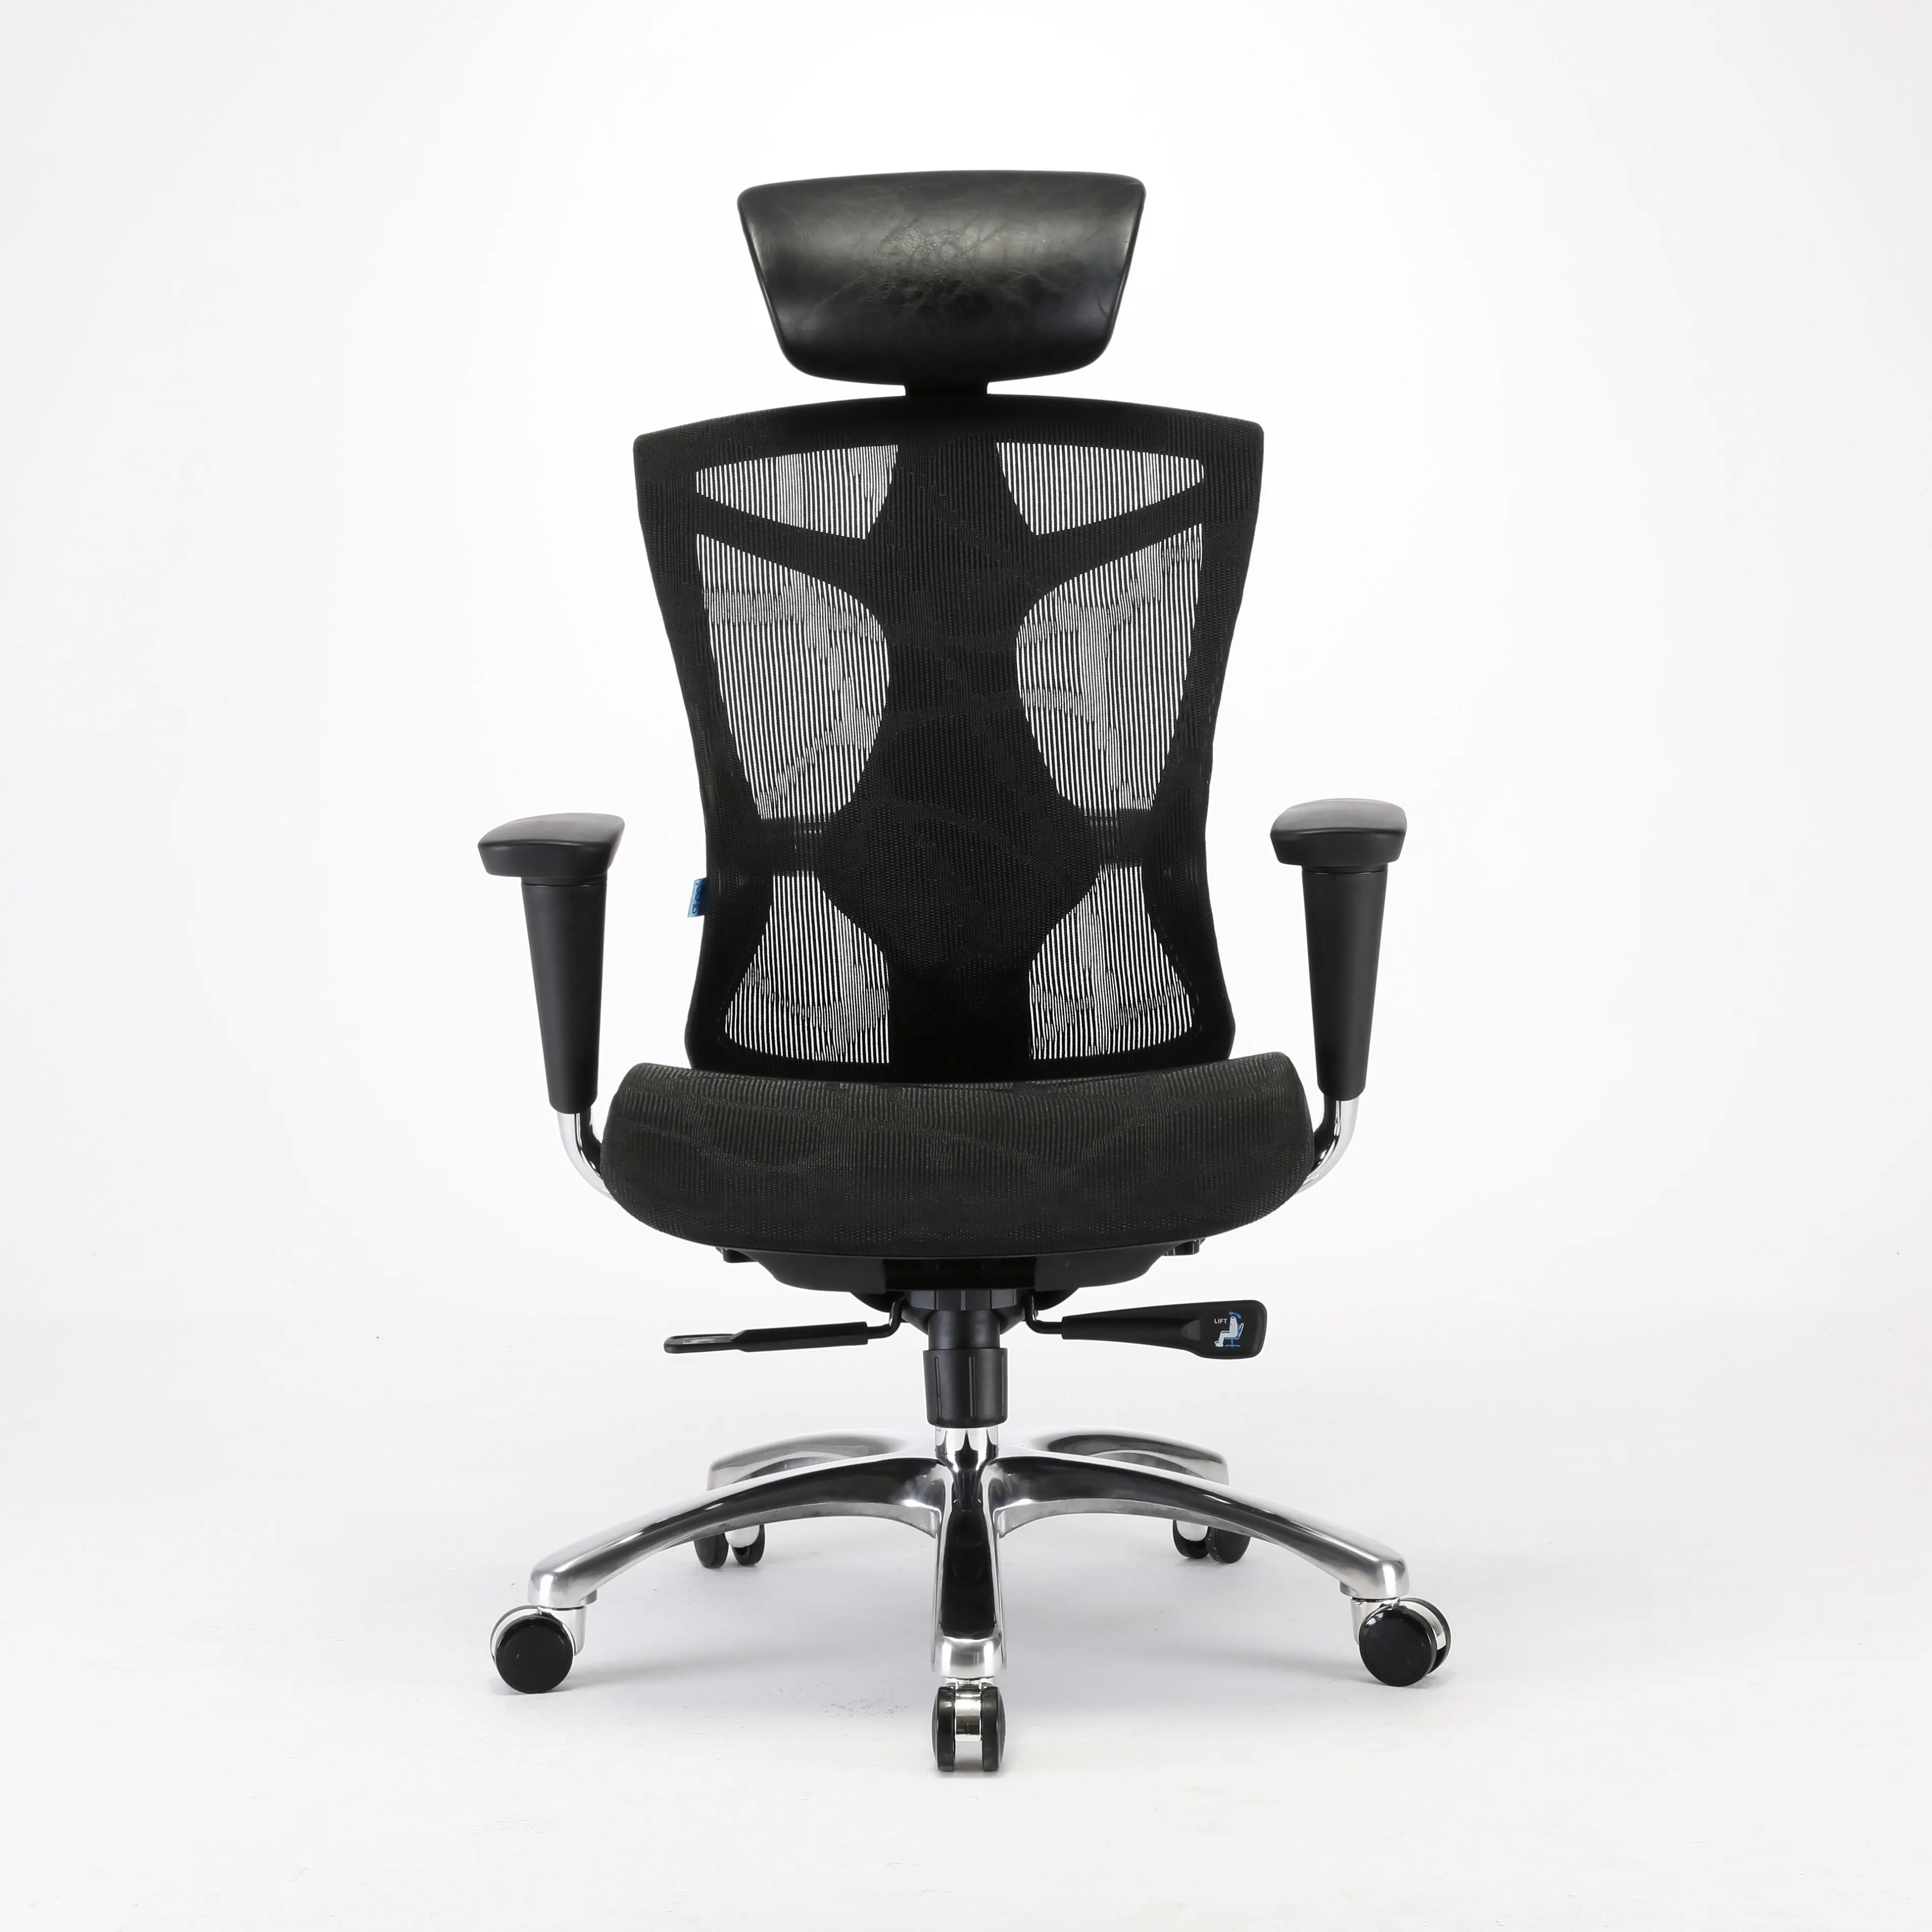 เก้าอี้สำนักงานเก้าอี้ตาข่ายเต็มรูปแบบที่เหมาะกับการทำงานพร้อมใบรับรองการออกแบบขั้นสูงเก้าอี้เจ้านาย